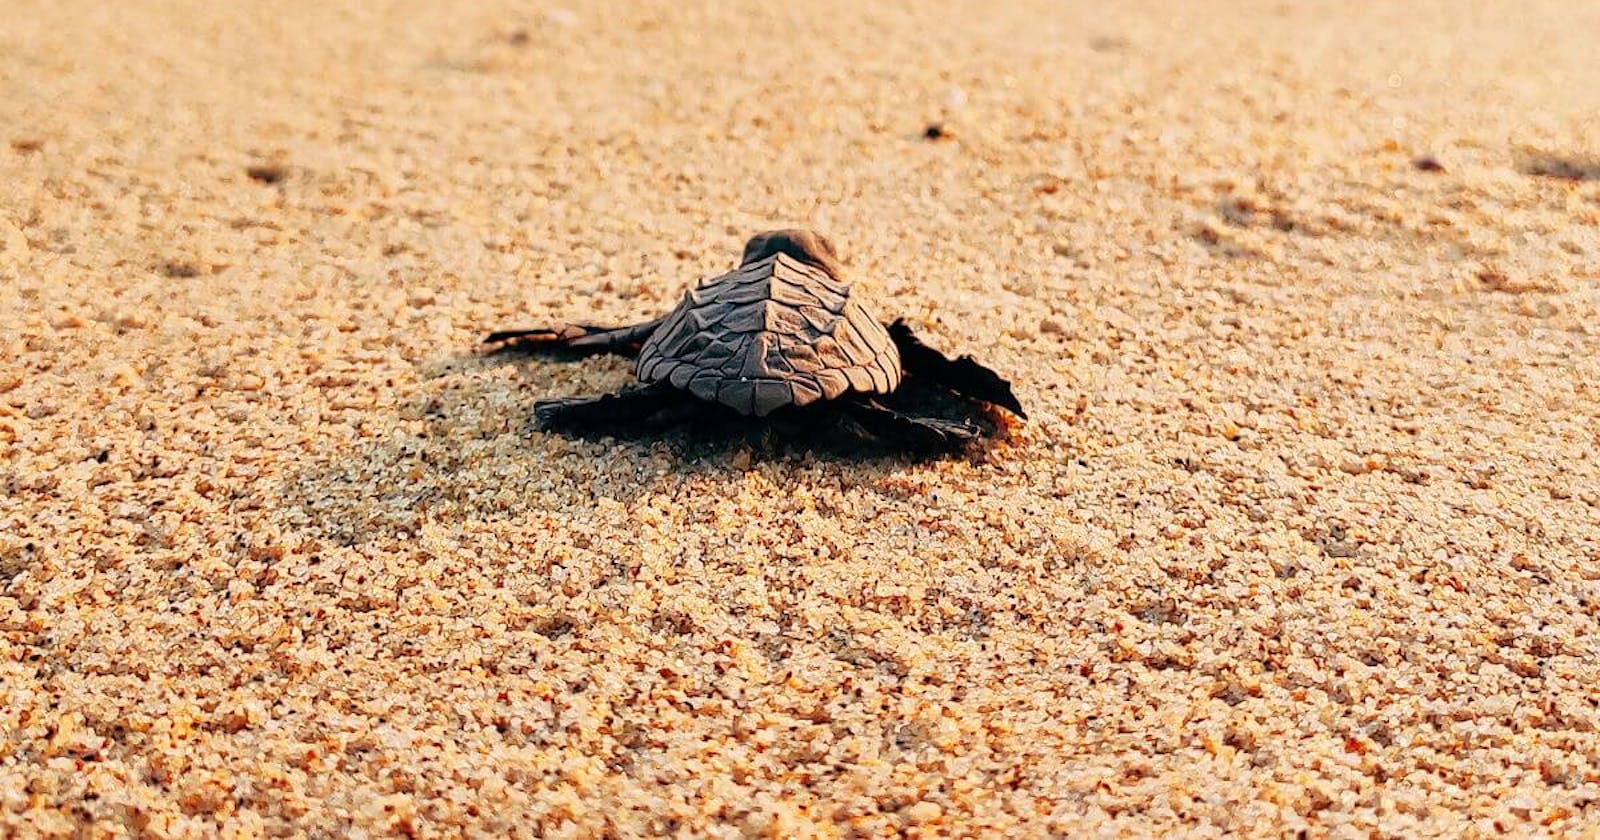 Meksyk - Wypuść żółwia morskiego do oceanu